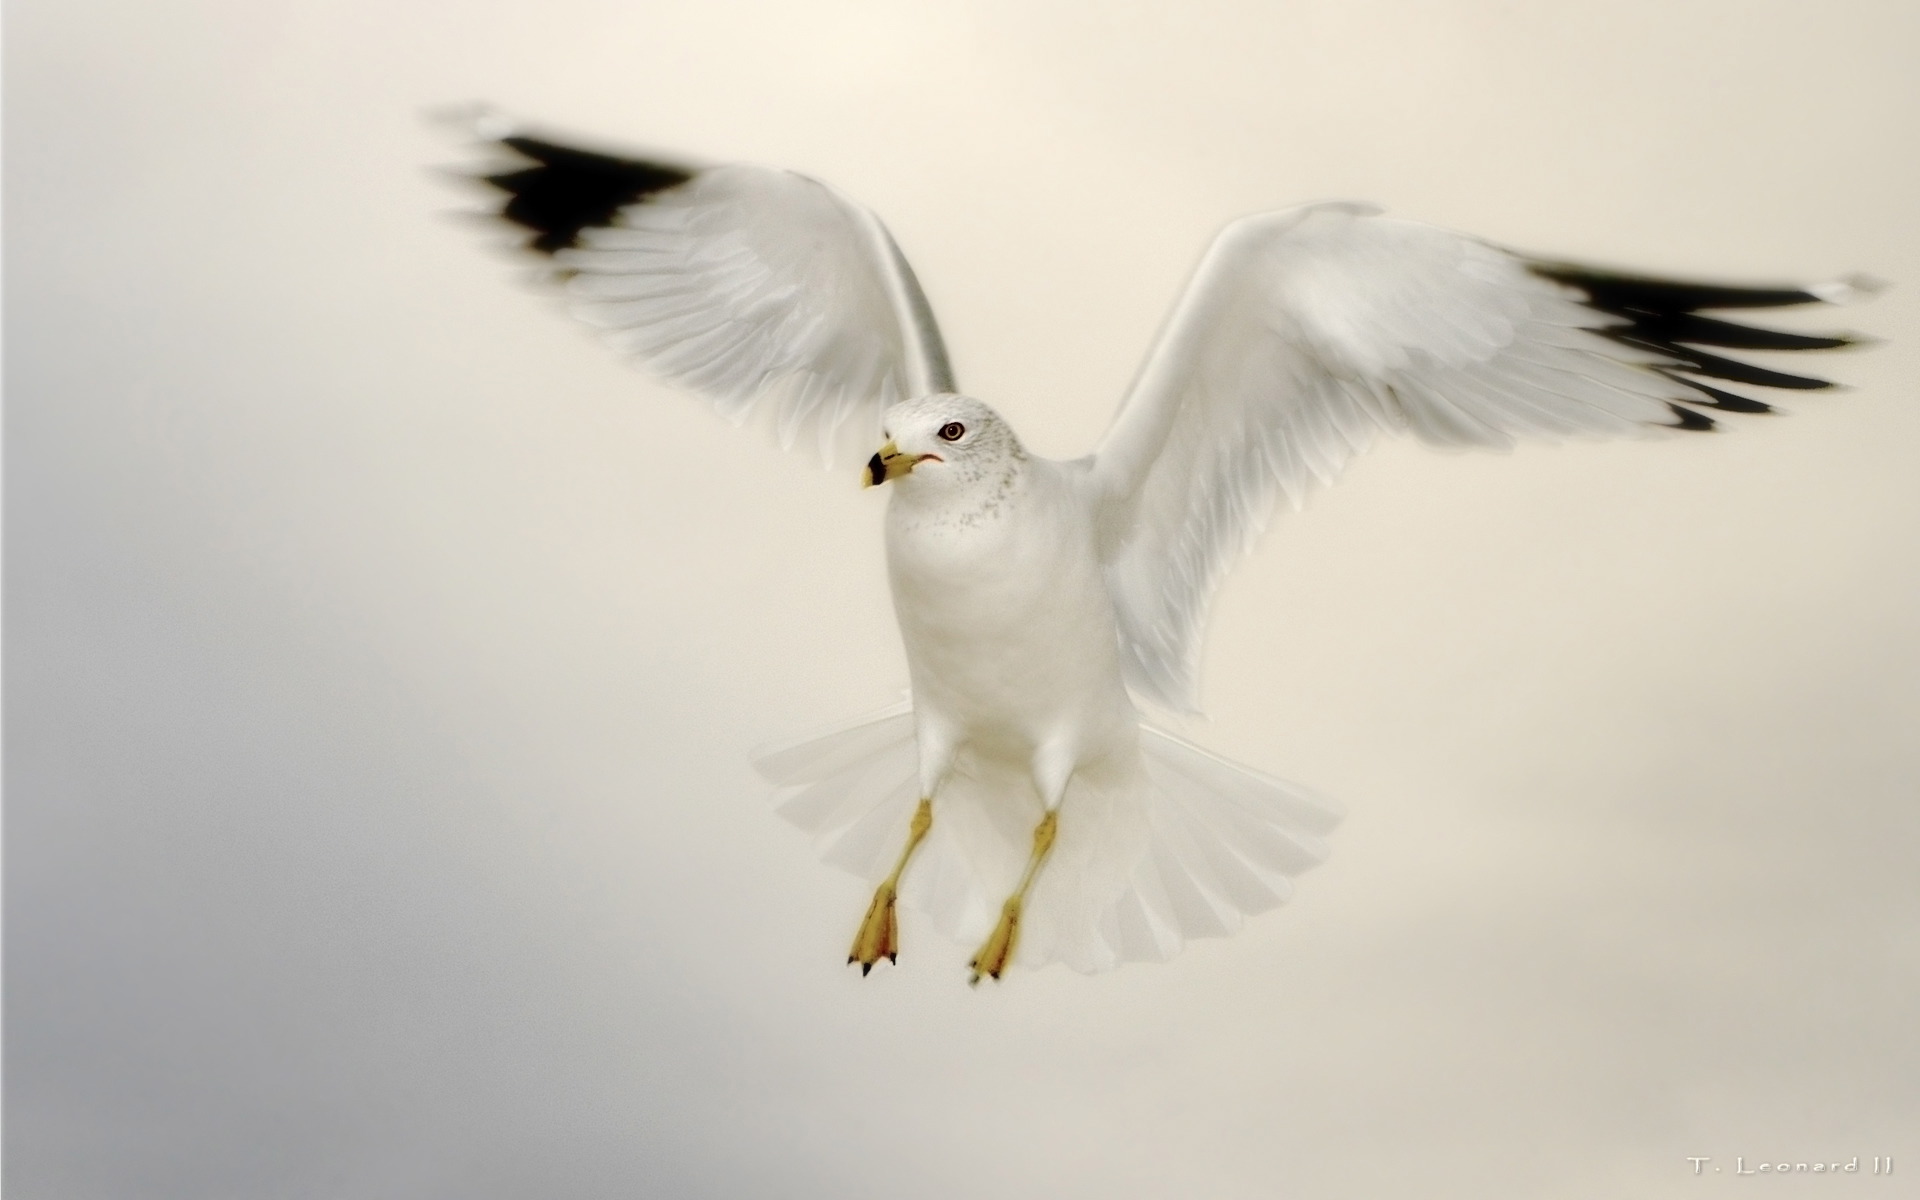 Seagull Against an Overcast SkyBy TheFozz 